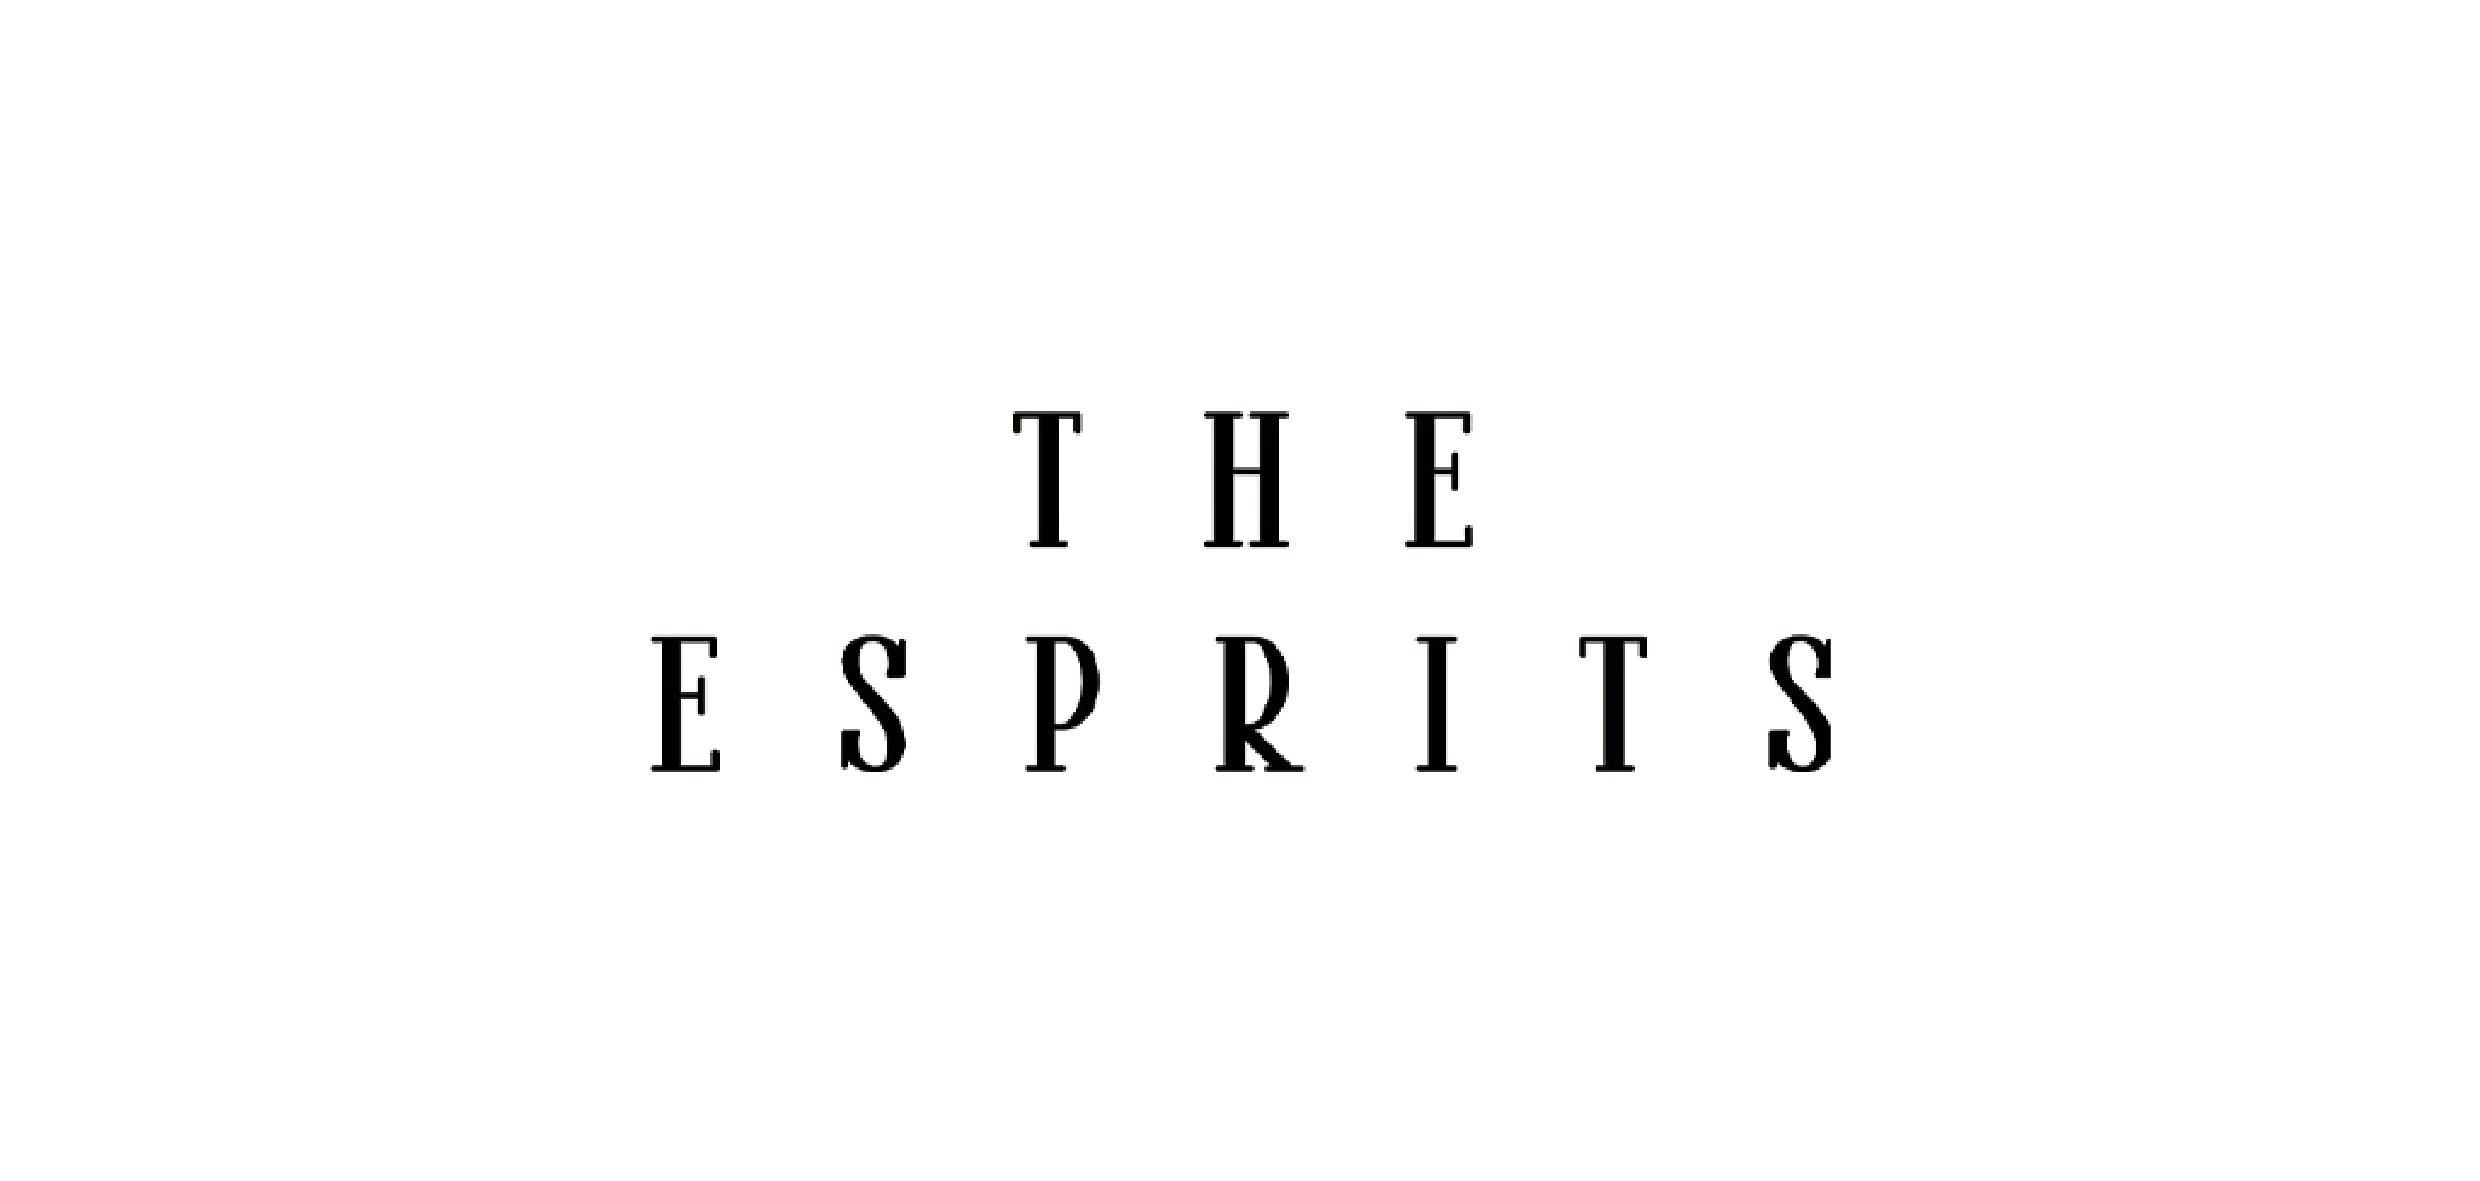 The Esprits - Außendarstellung, Corporate Identity, Webdesign und Shop